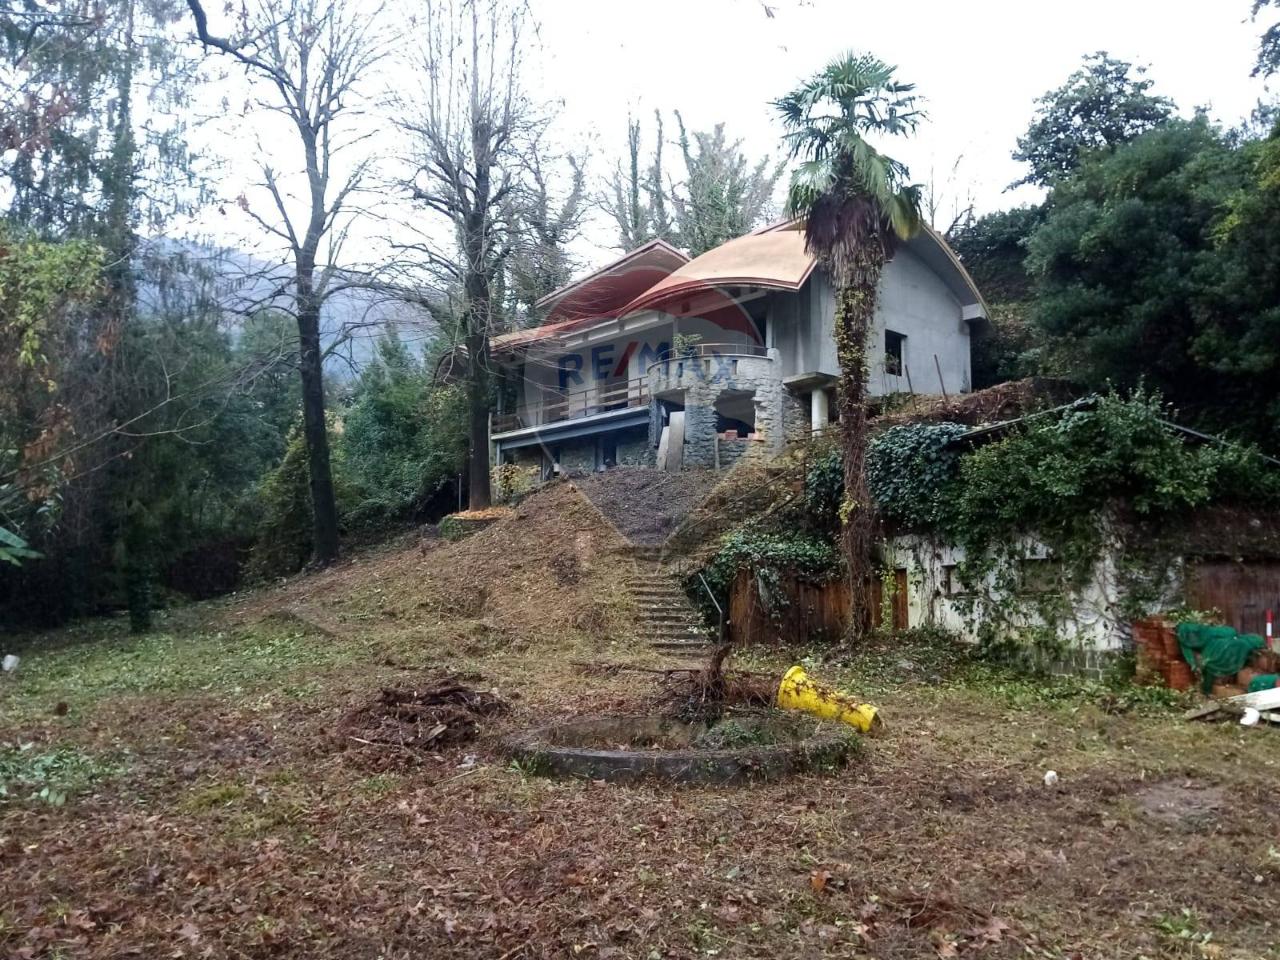 Villa in vendita a Rapallo